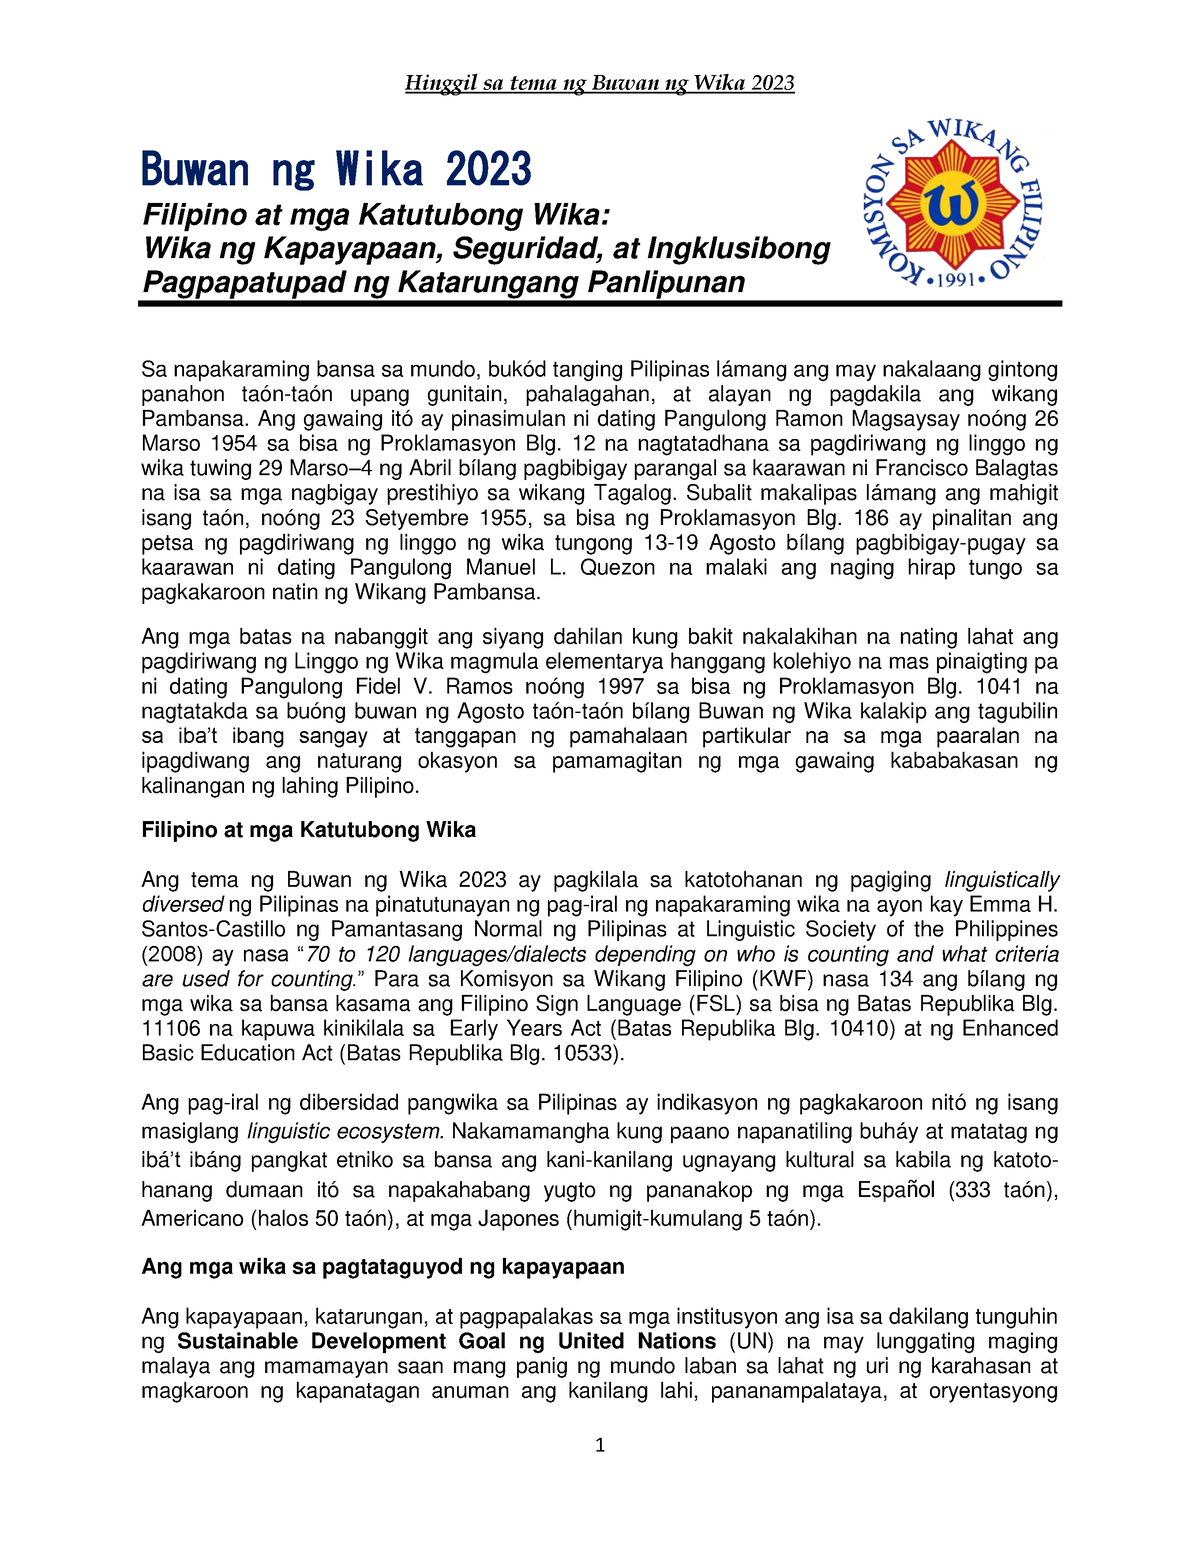 Paliwanag Sa Tema Buwan Ng Wika 2023 Buwan Ng Wika 2023 Filipino At Mga Katutubong Wika Wika 8295